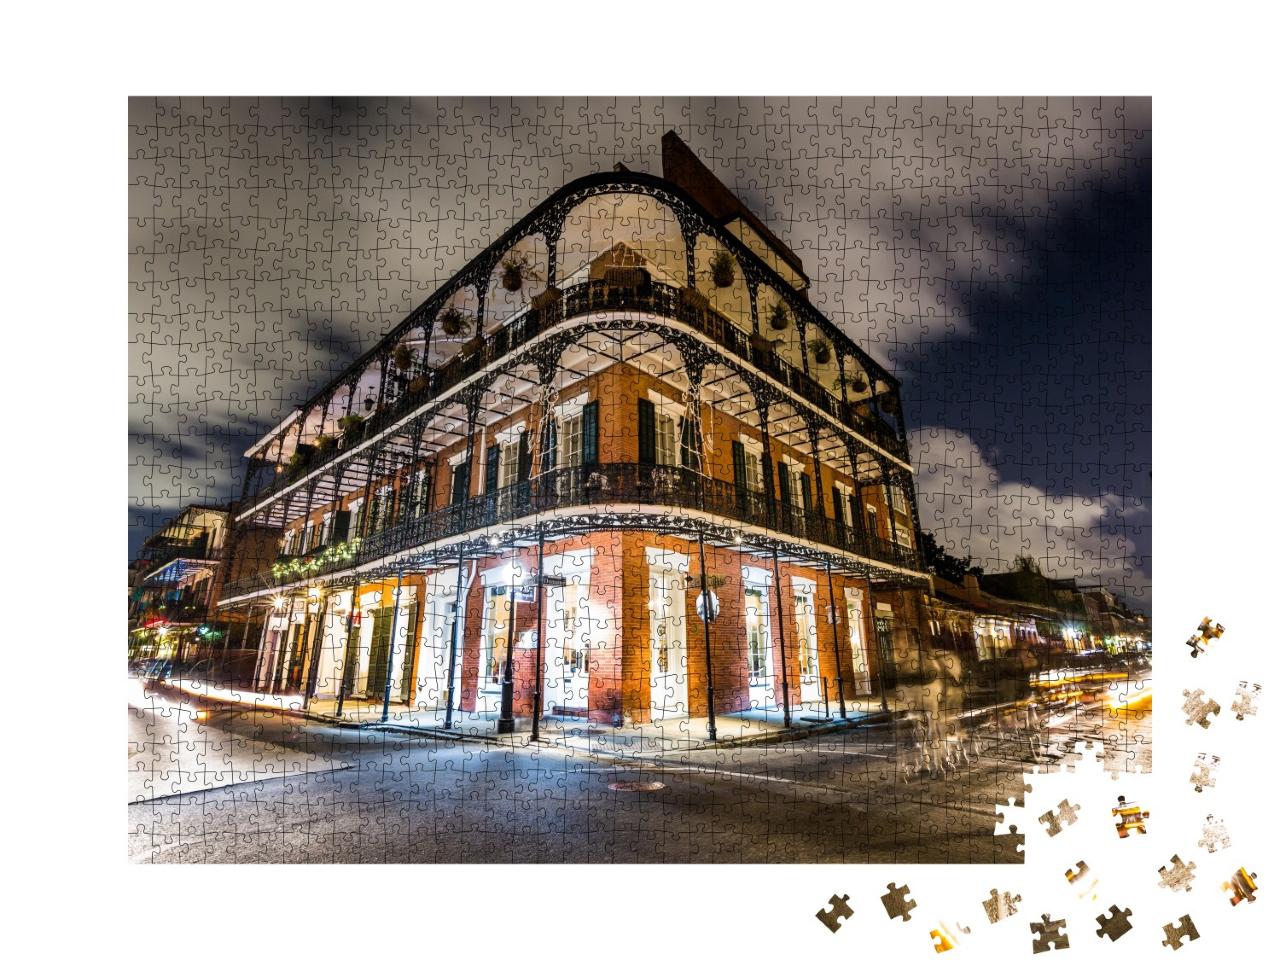 Puzzle de 1000 pièces « French Quarters dans le centre-ville de la Nouvelle-Orléans »